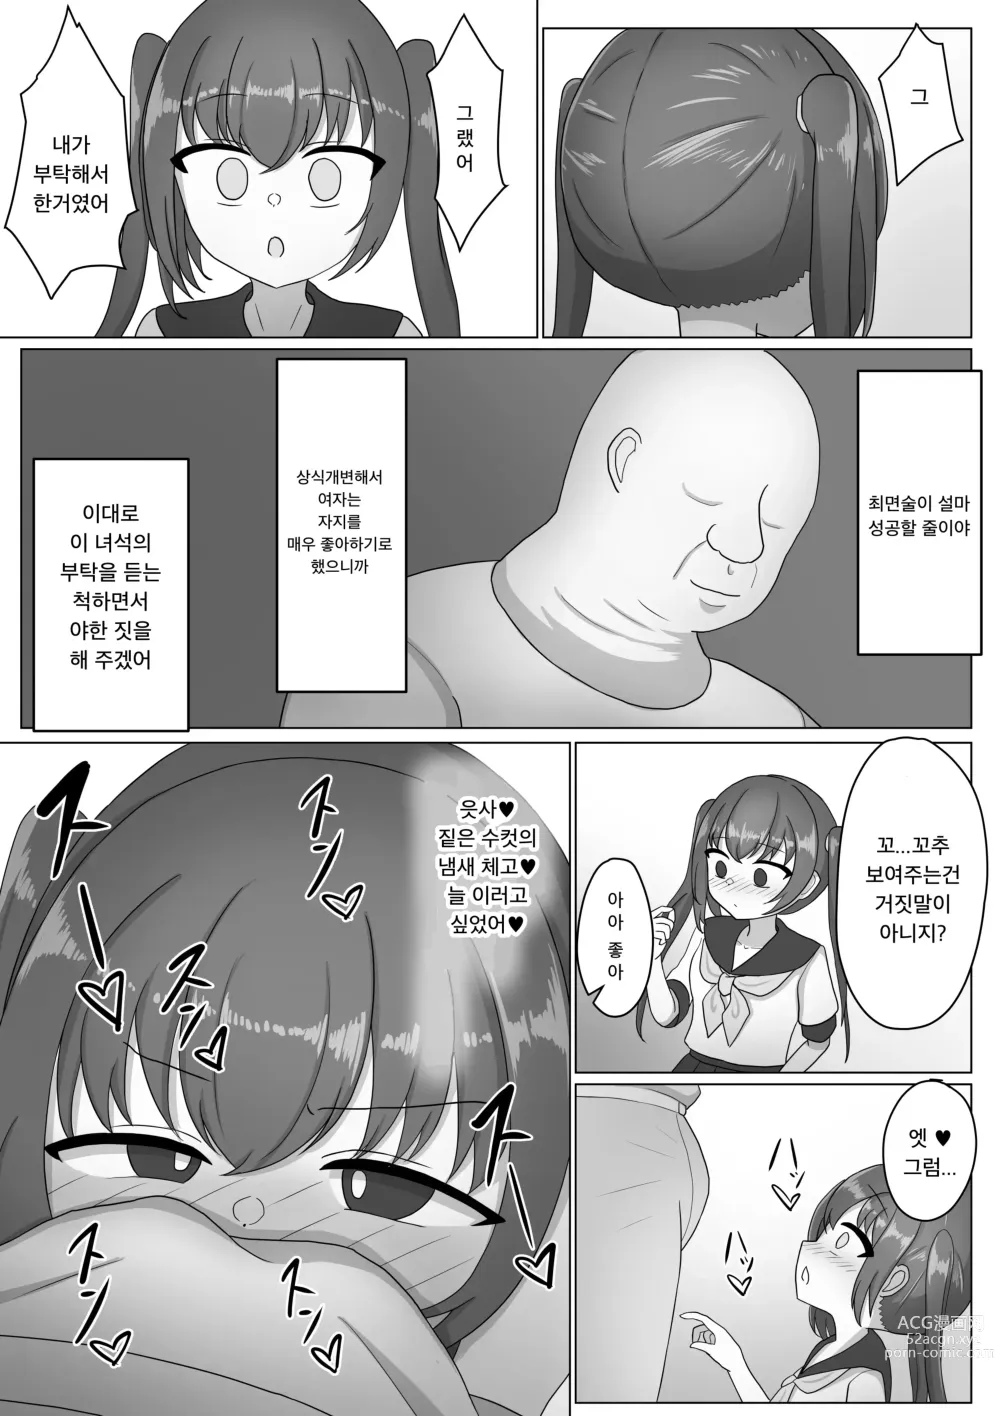 Page 6 of doujinshi 여자아이는 남자에게 지배당하기 위한 생물이였어